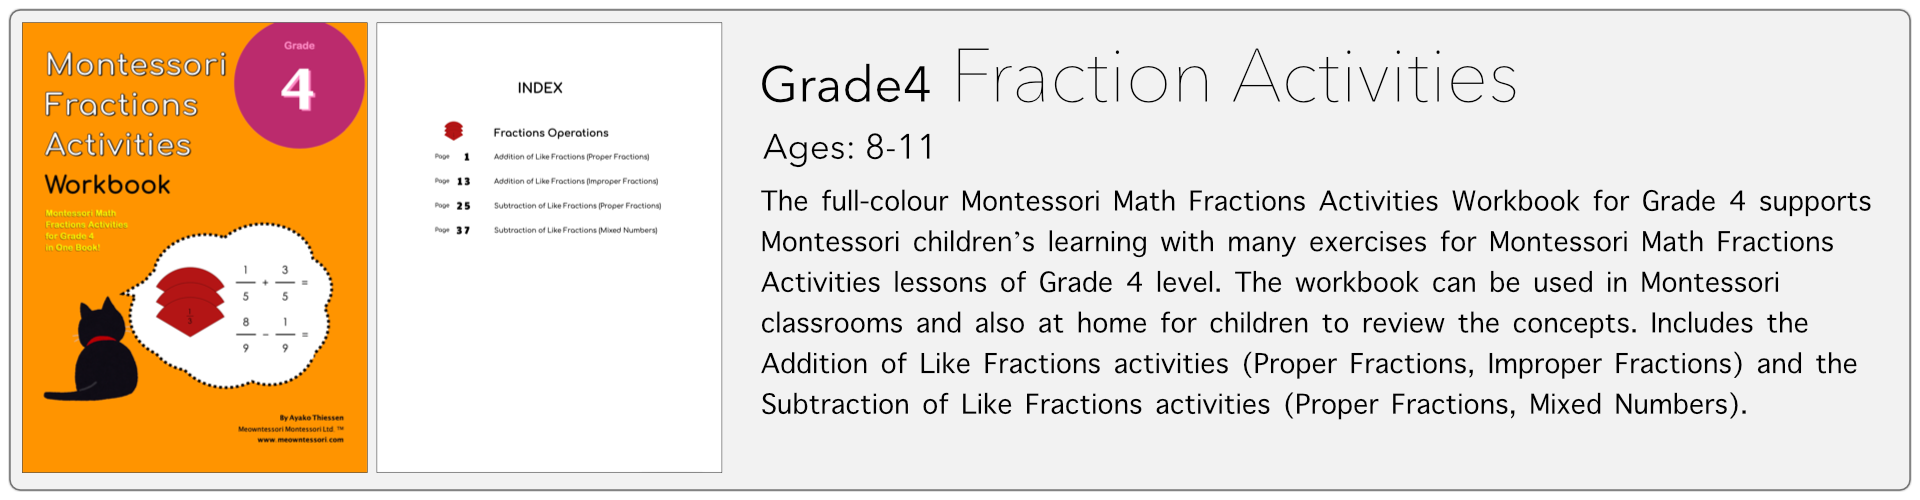 grade4 fraction